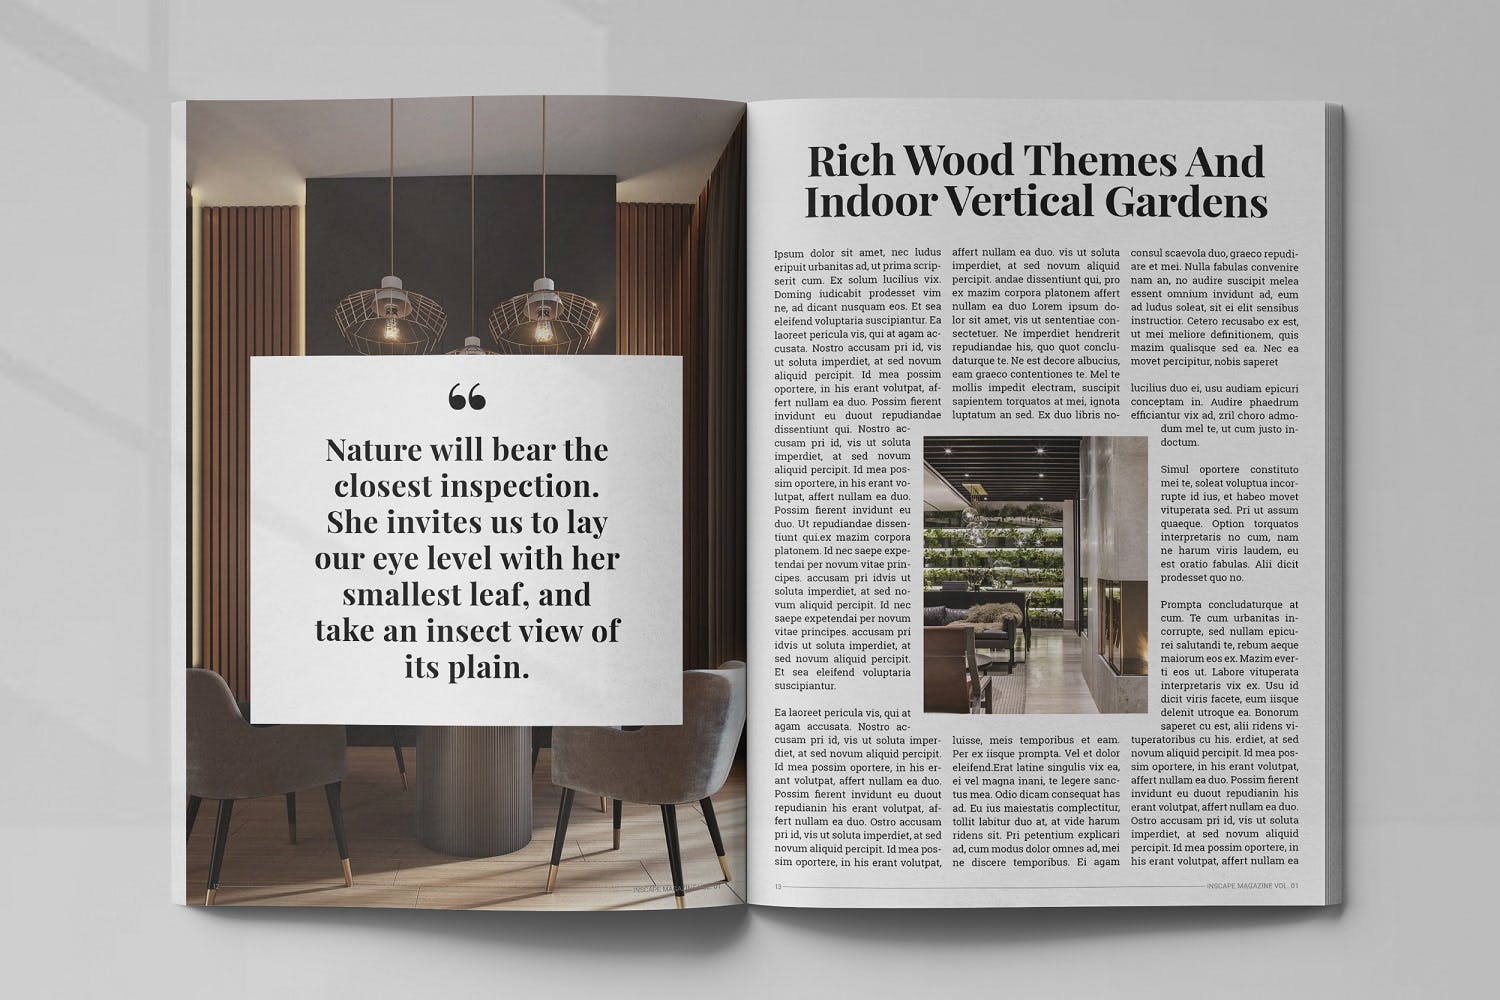 室内设计主题蚂蚁素材精选杂志排版设计模板 Inscape Interior Magazine插图(6)